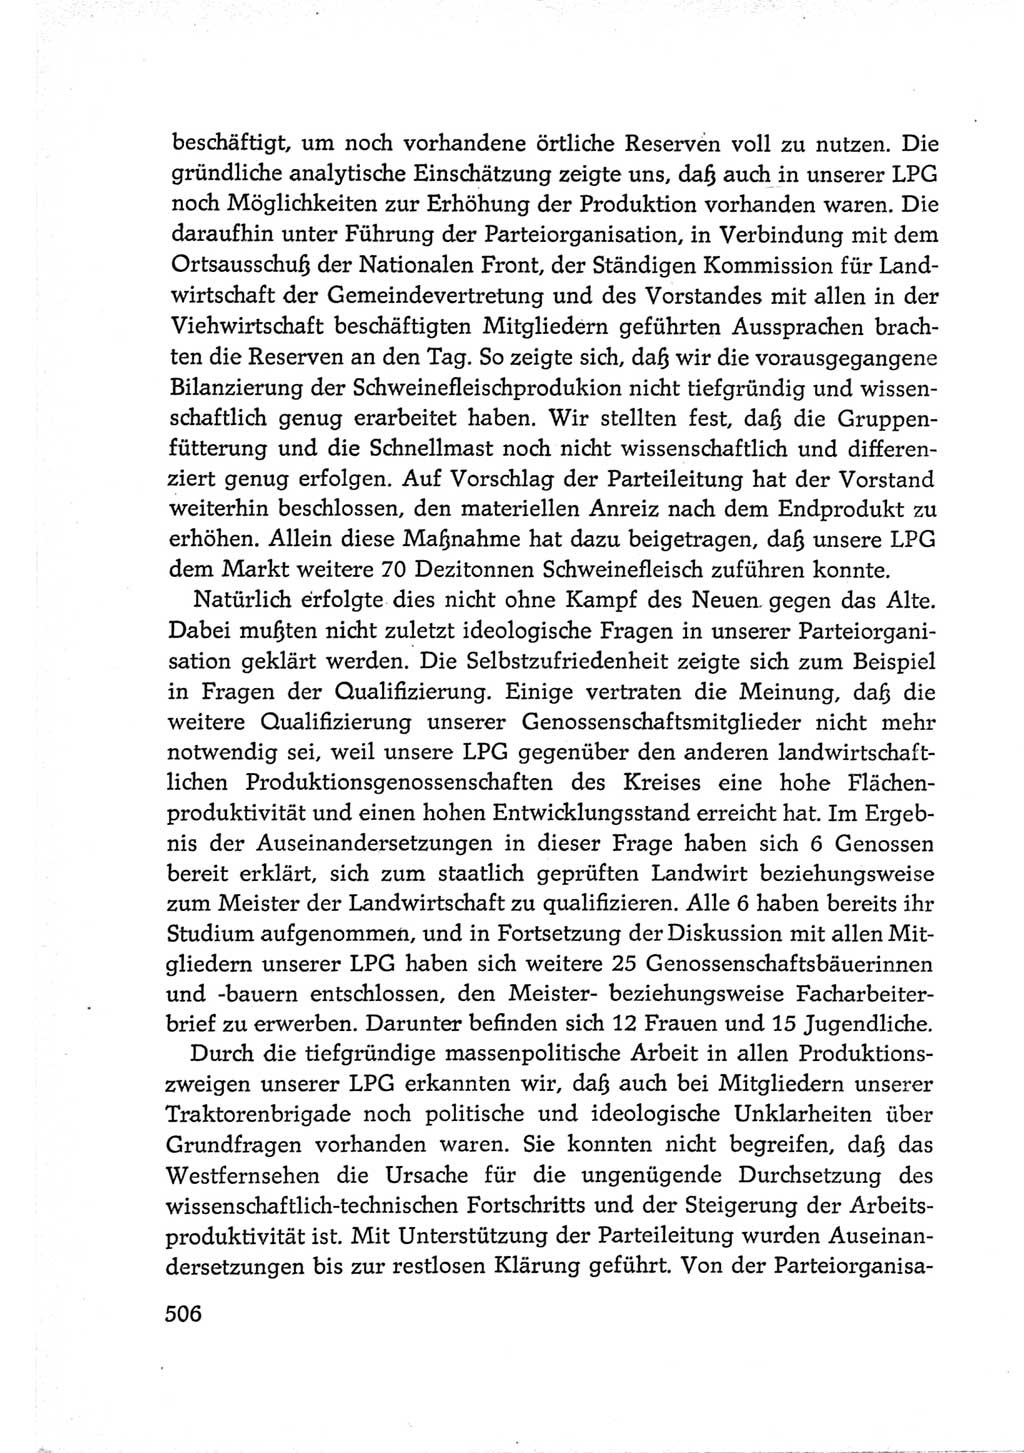 Protokoll der Verhandlungen des Ⅵ. Parteitages der Sozialistischen Einheitspartei Deutschlands (SED) [Deutsche Demokratische Republik (DDR)] 1963, Band Ⅲ, Seite 506 (Prot. Verh. Ⅵ. PT SED DDR 1963, Bd. Ⅲ, S. 506)